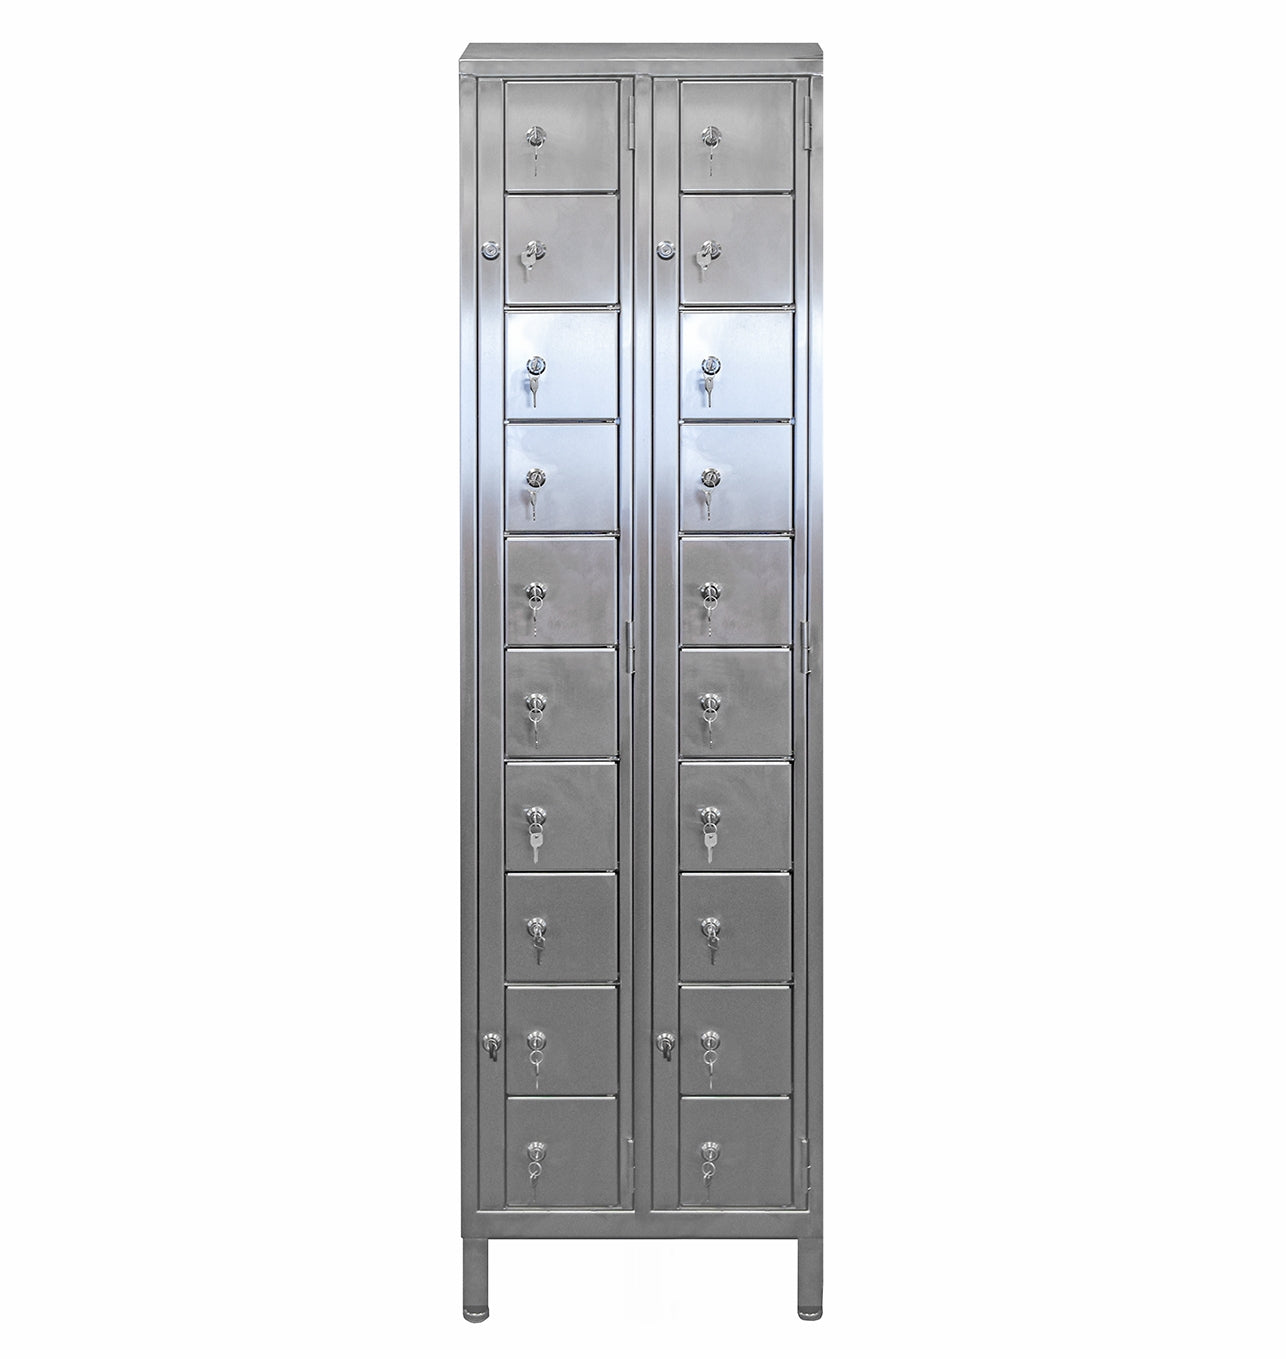 Stainless Steel Multi-tier Dispensing Lockers